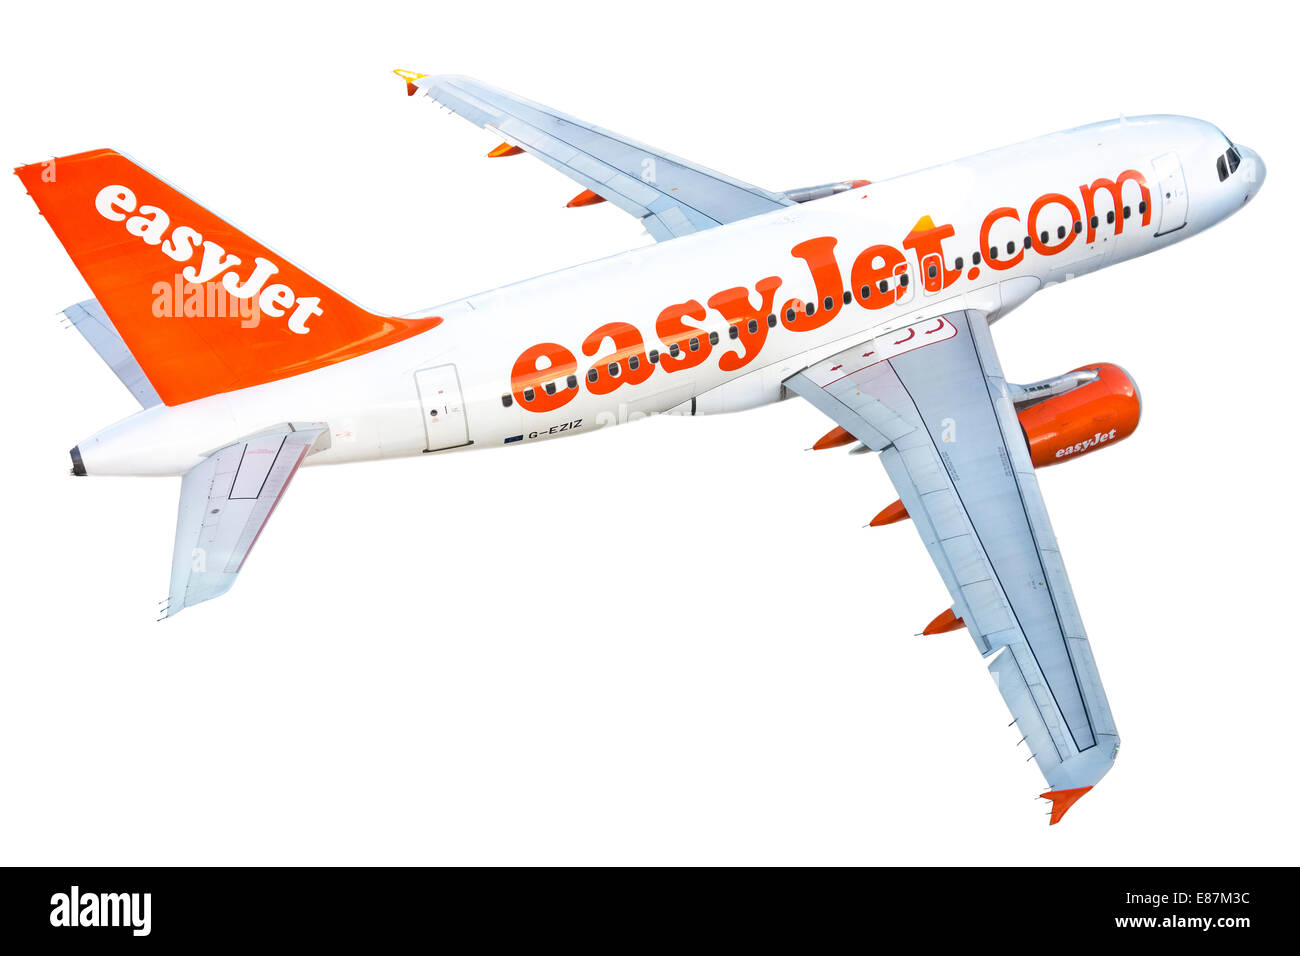 EasyJet Flugzeug Flugzeug Airbus A319-111 A 319 111. Ausschnitt Ausschnitt isoliert auf einem weißen Hintergrund. Echtes Flugzeug. Kein Spielzeugmodell. Stockfoto